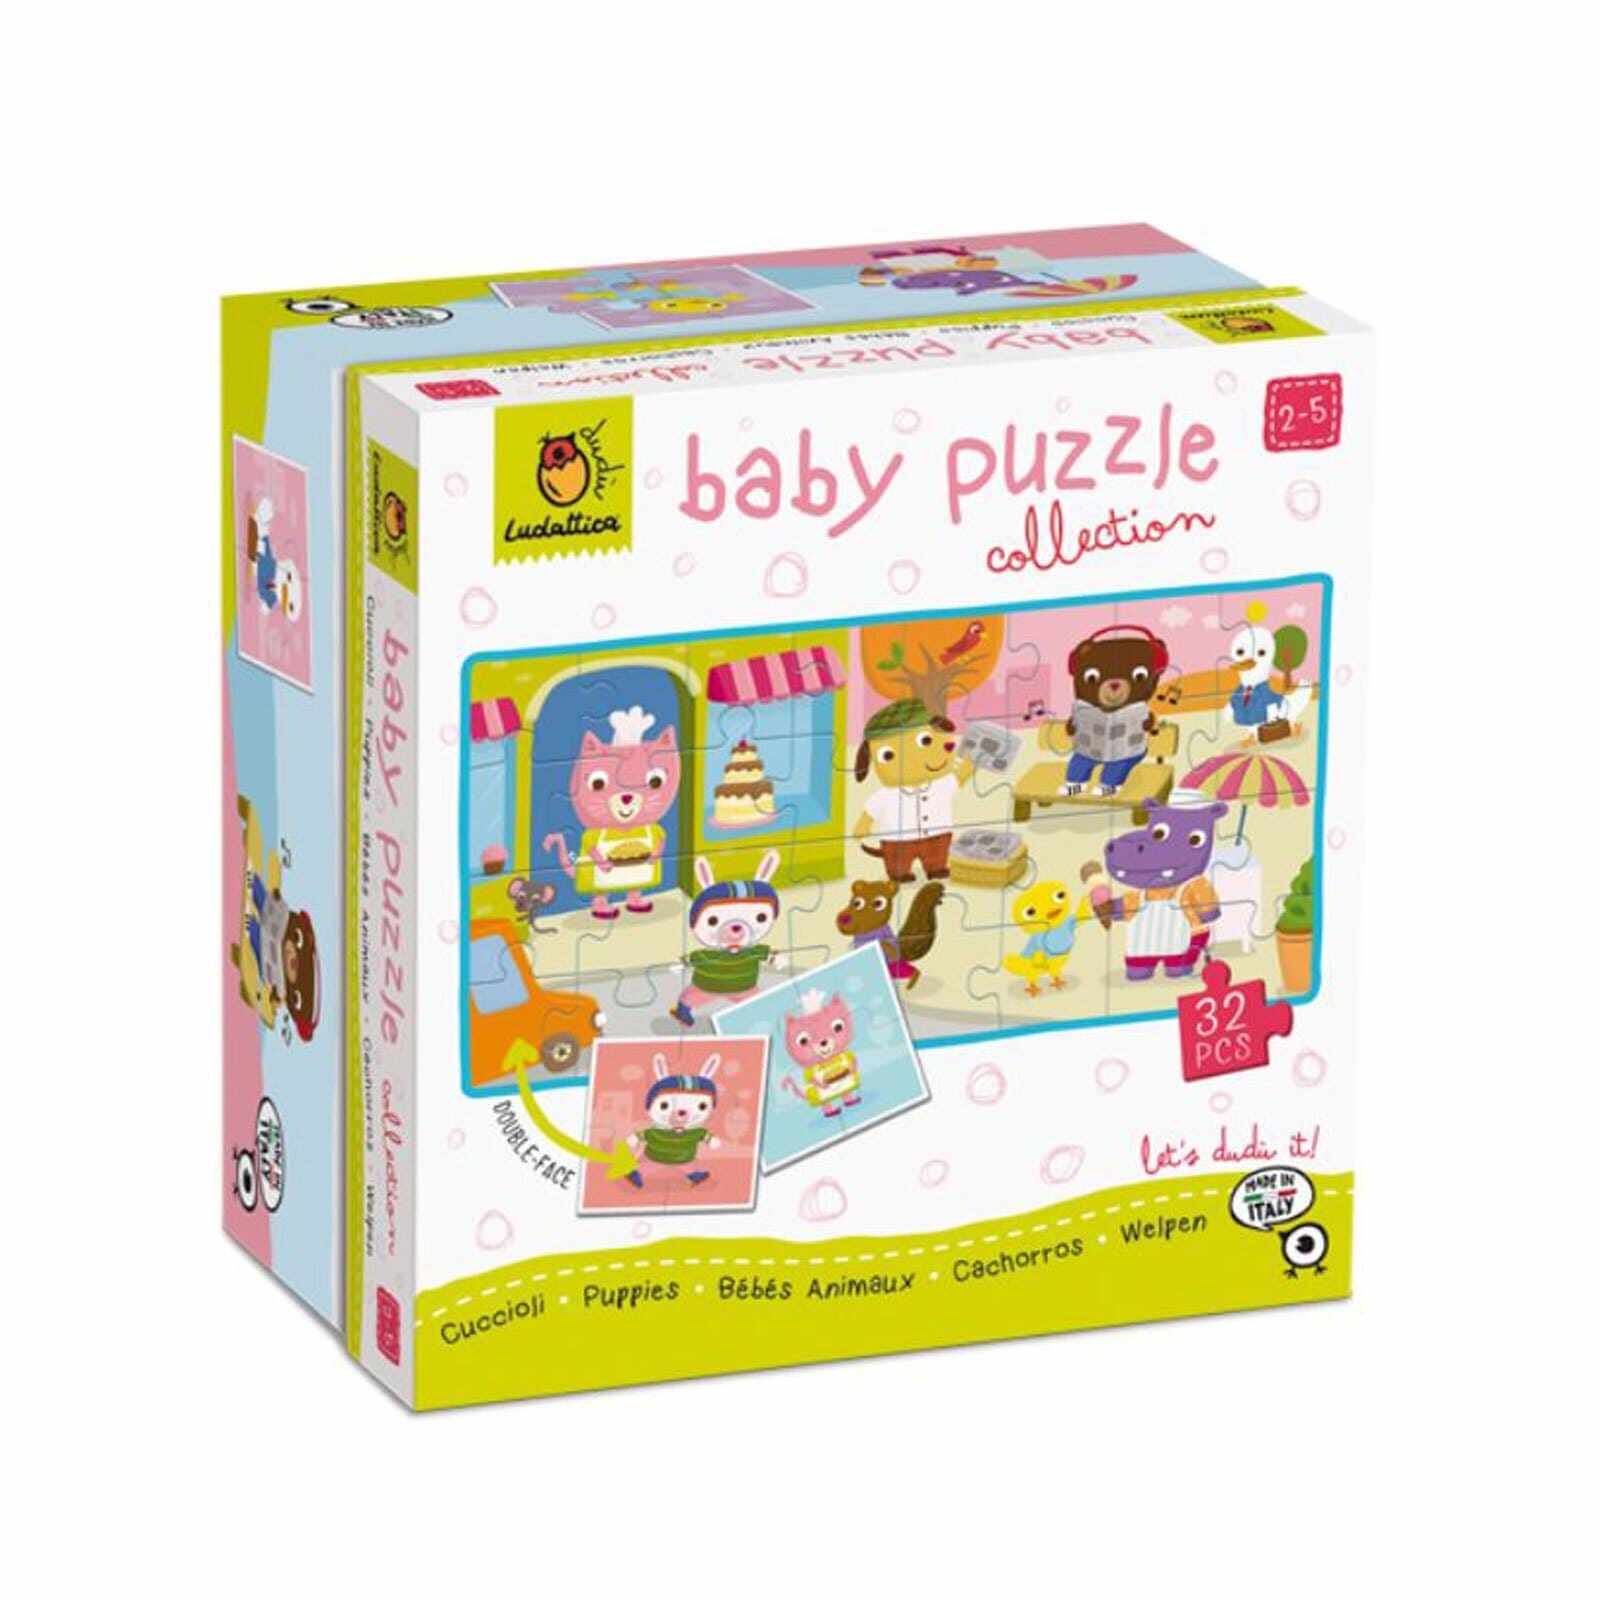 Baby Puzzle Catelusi, Ludattica, 2-3 ani, 24 piese